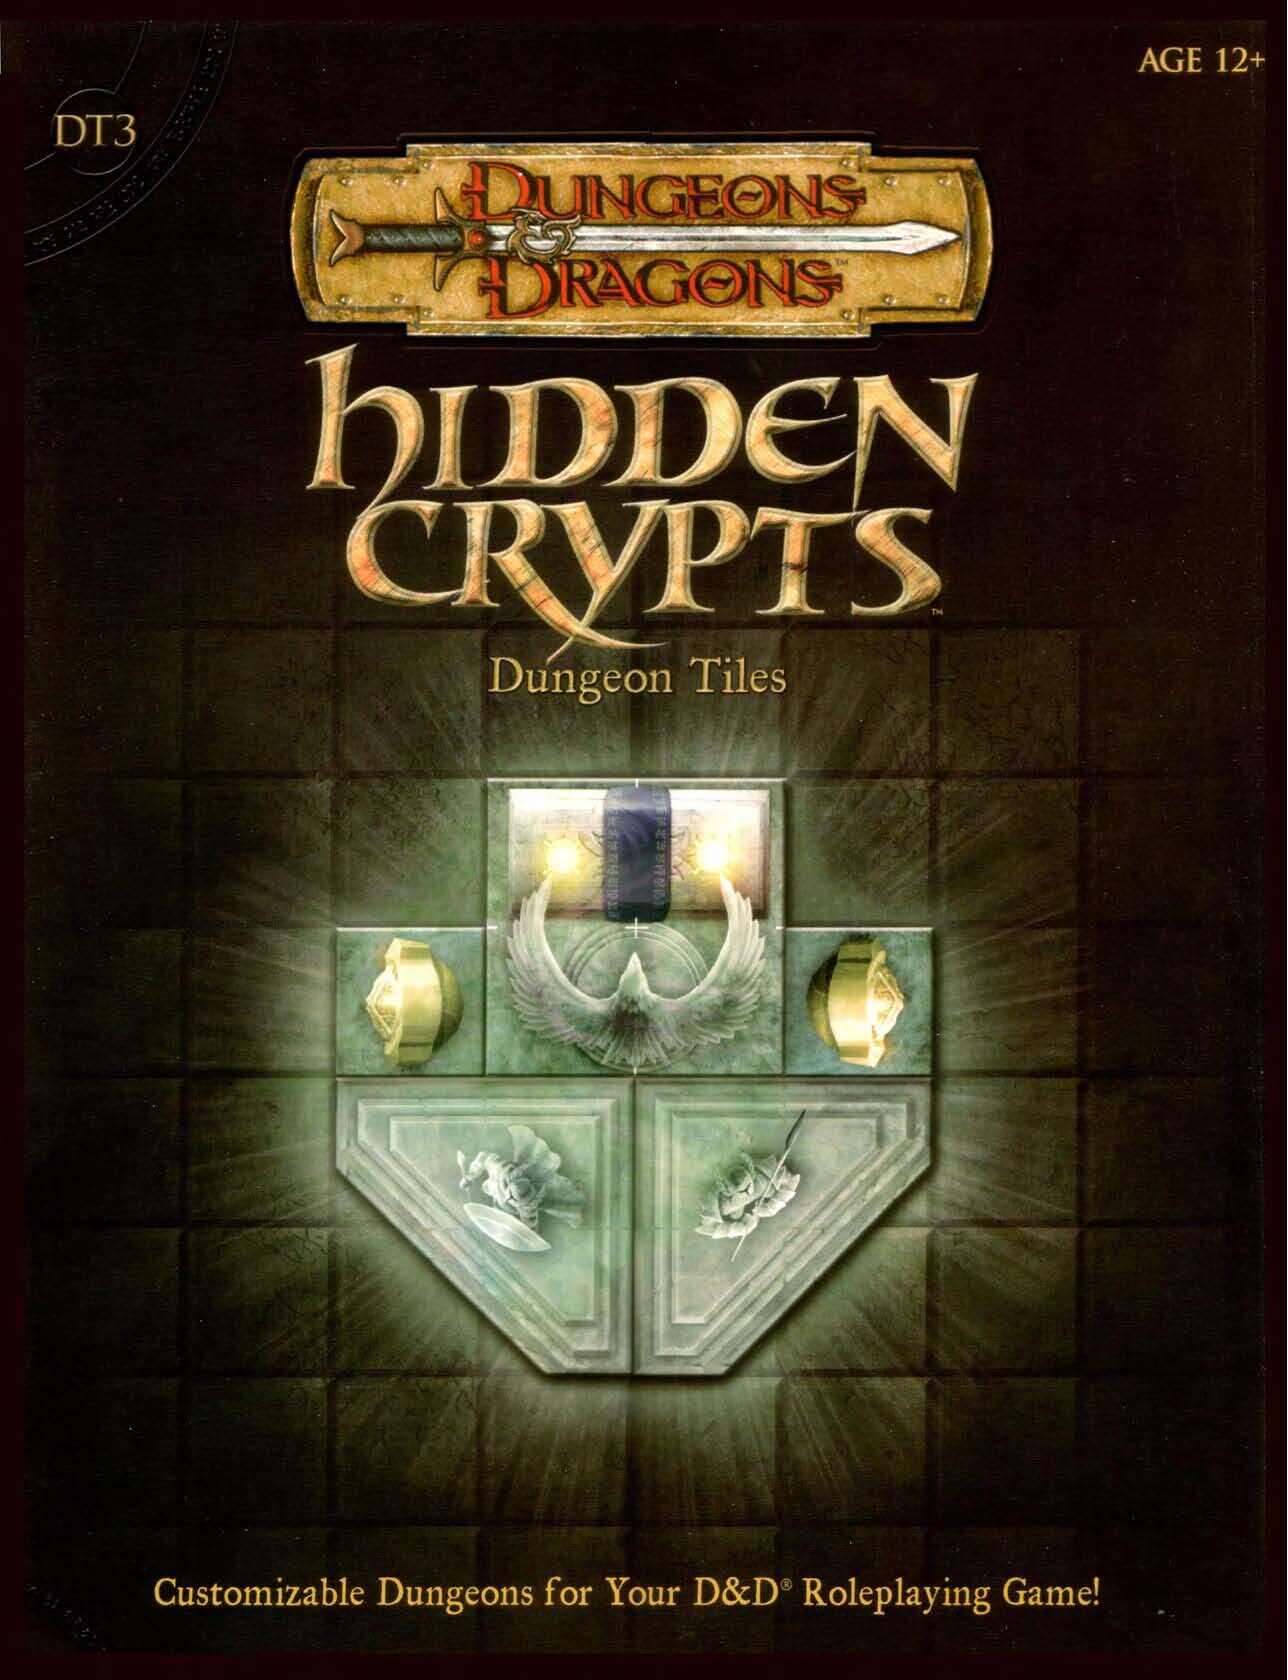 Dungeon Tiles III. Hidden Crypts